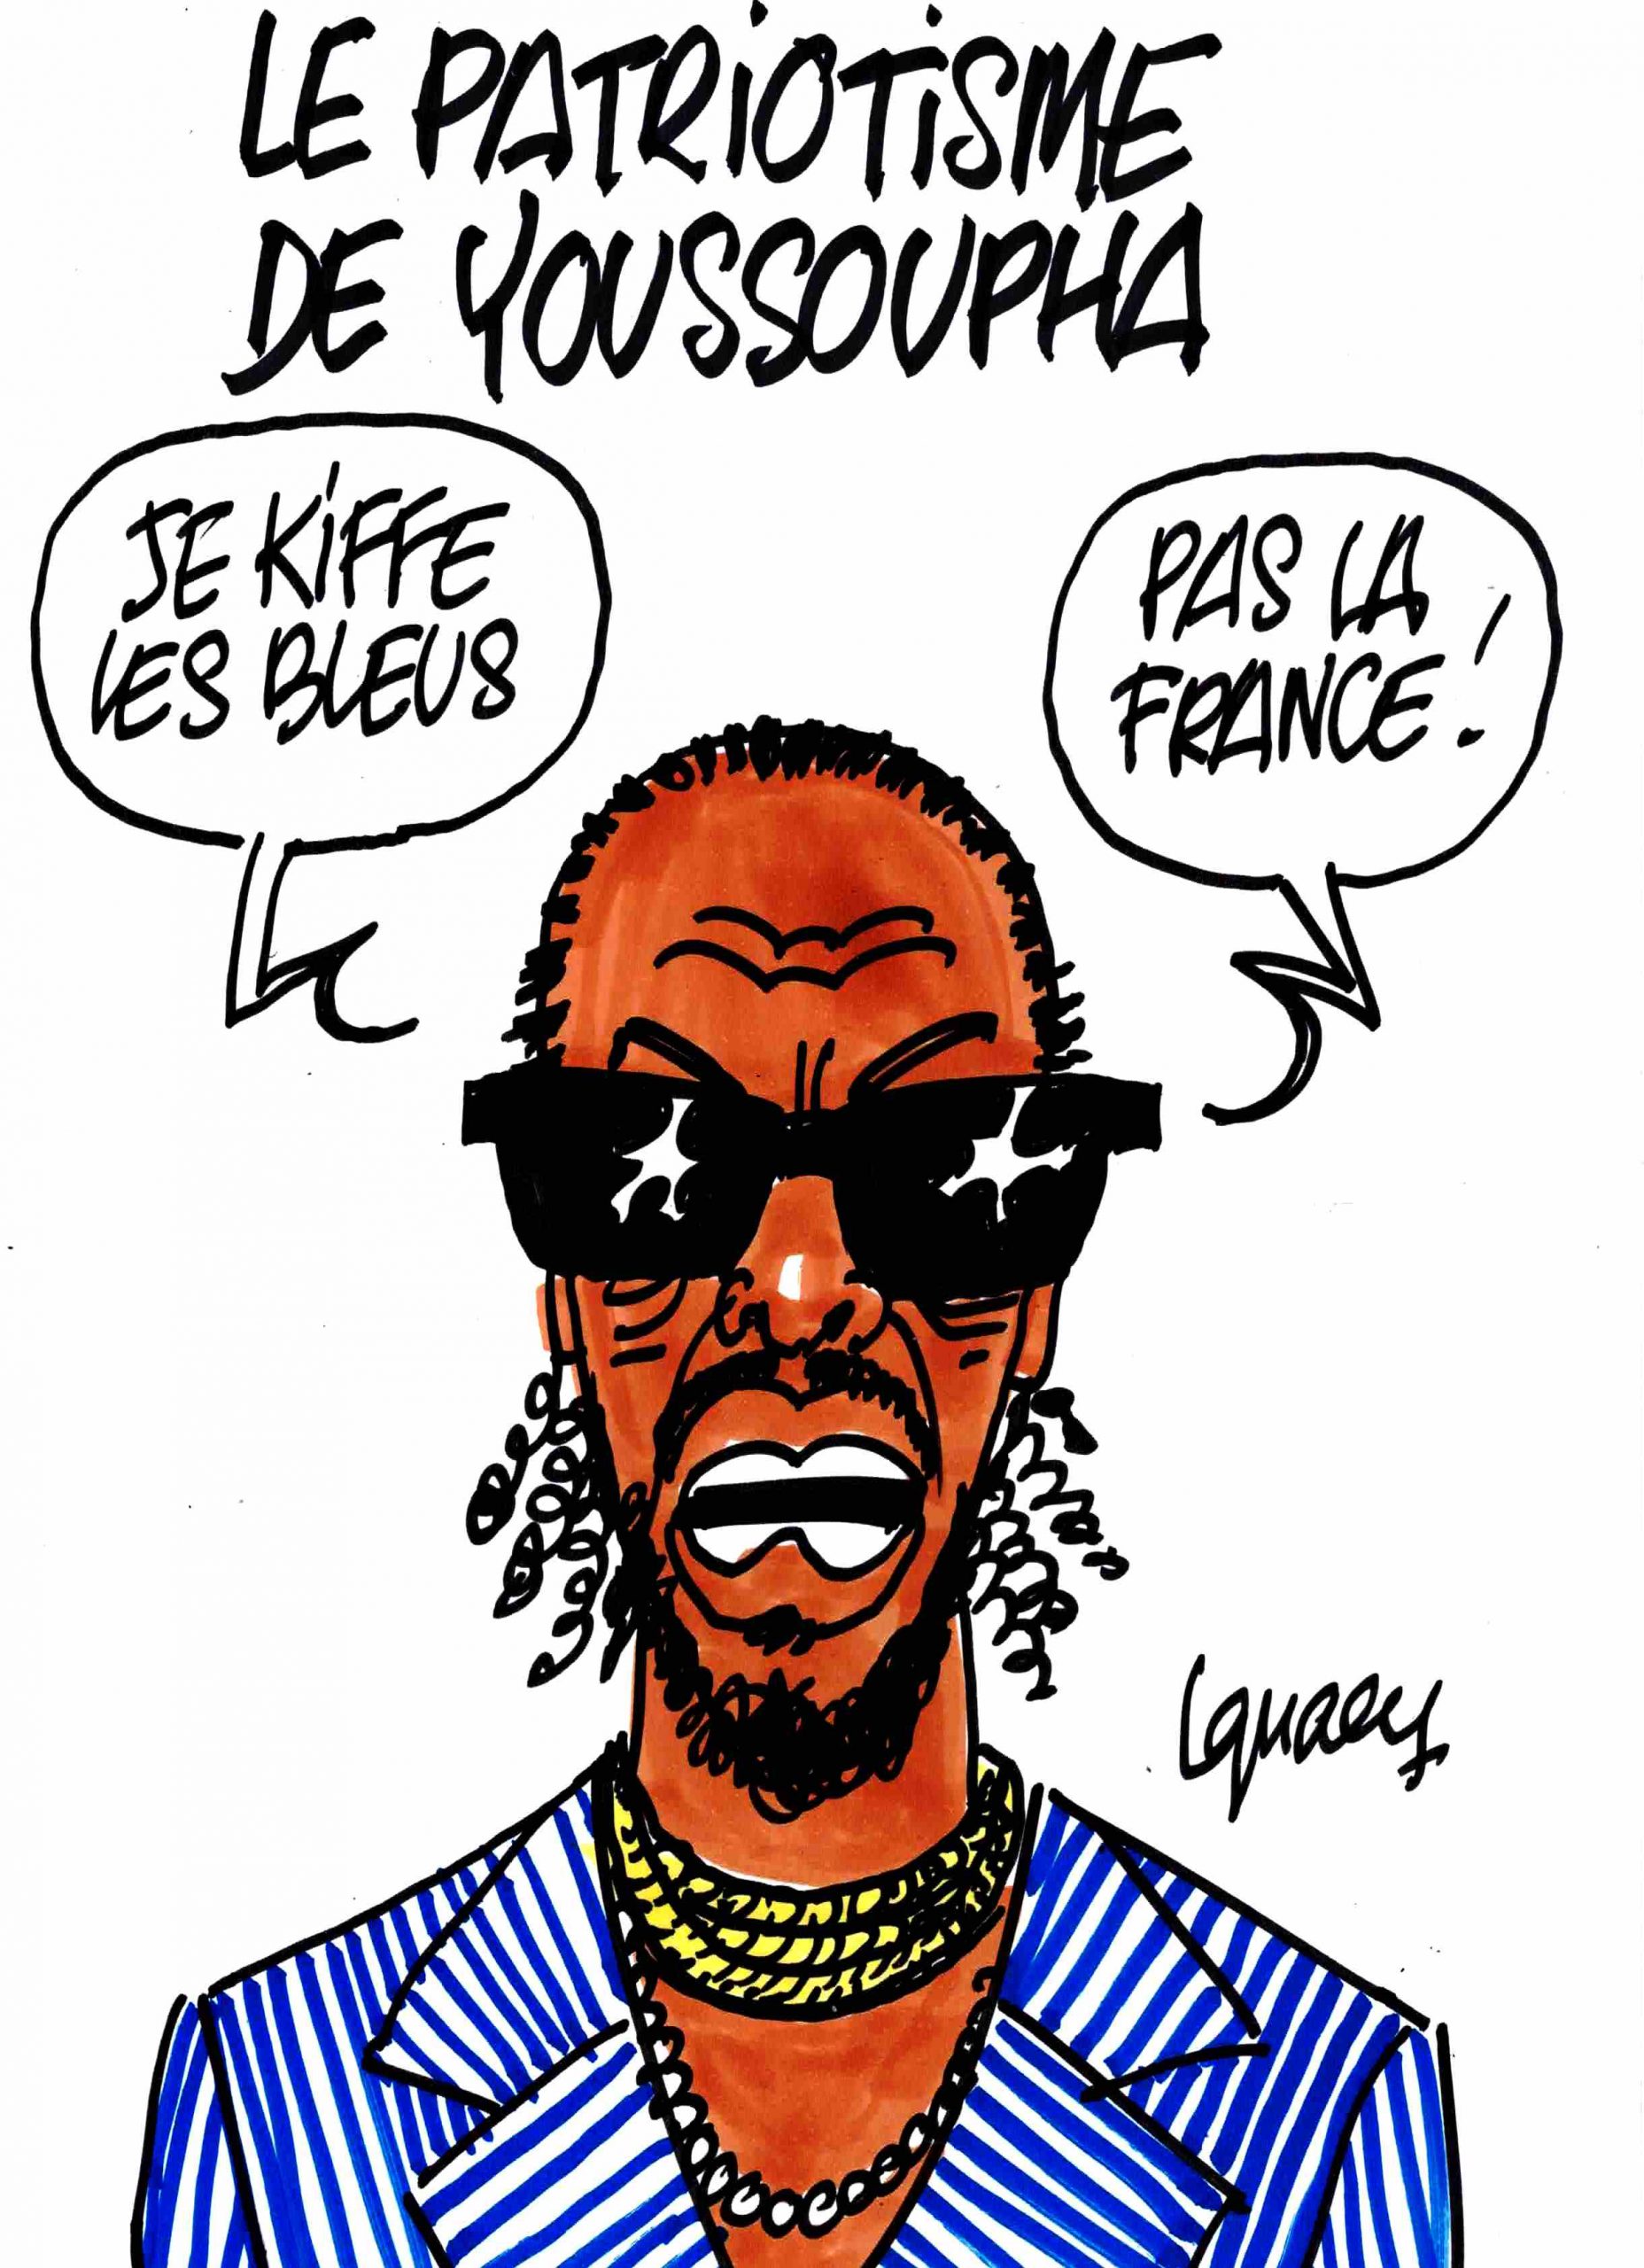 Ignace - Le patriotisme de Youssoupha